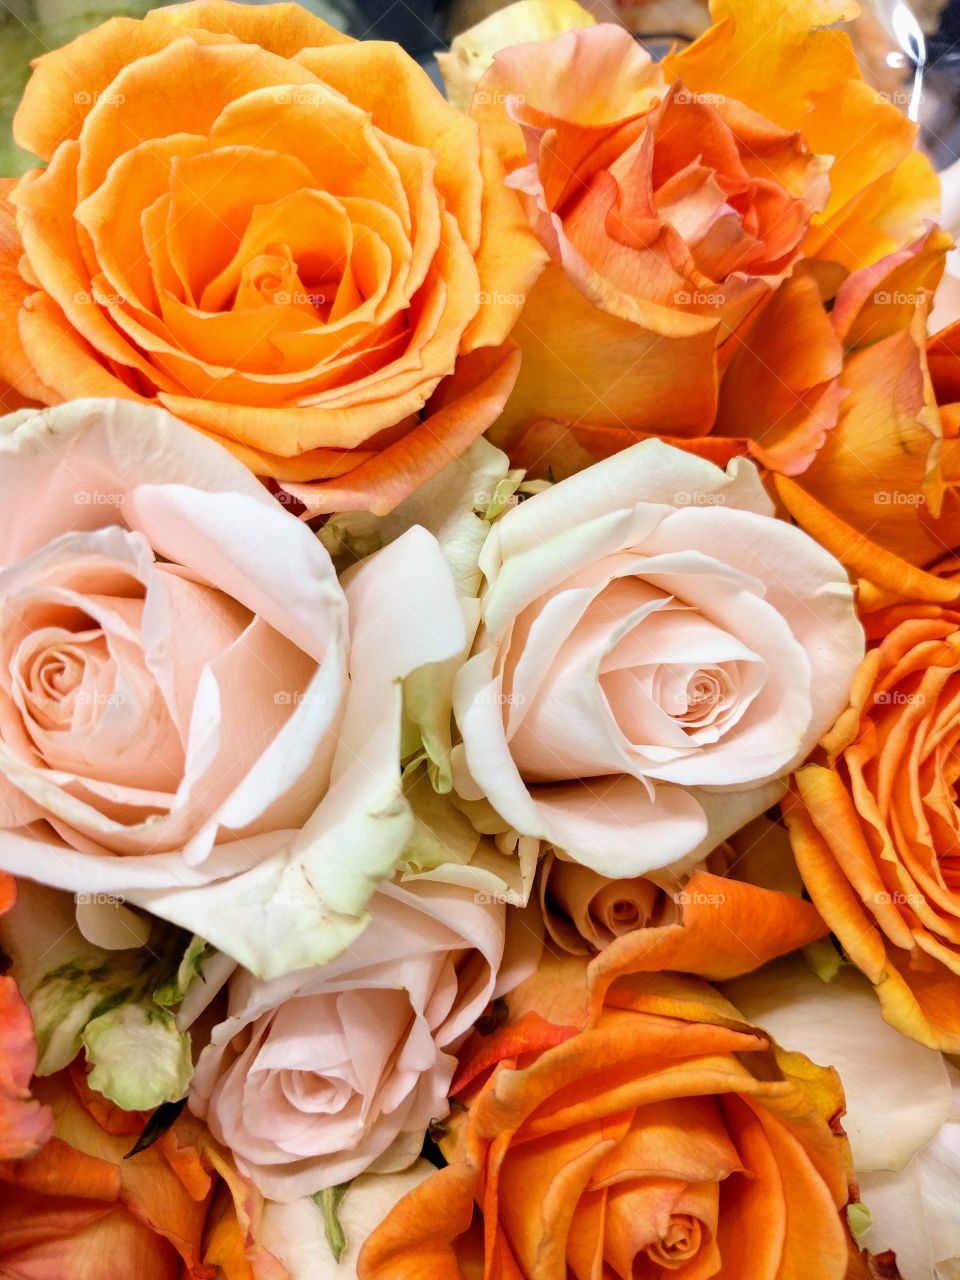 orange and cream roses bouquet